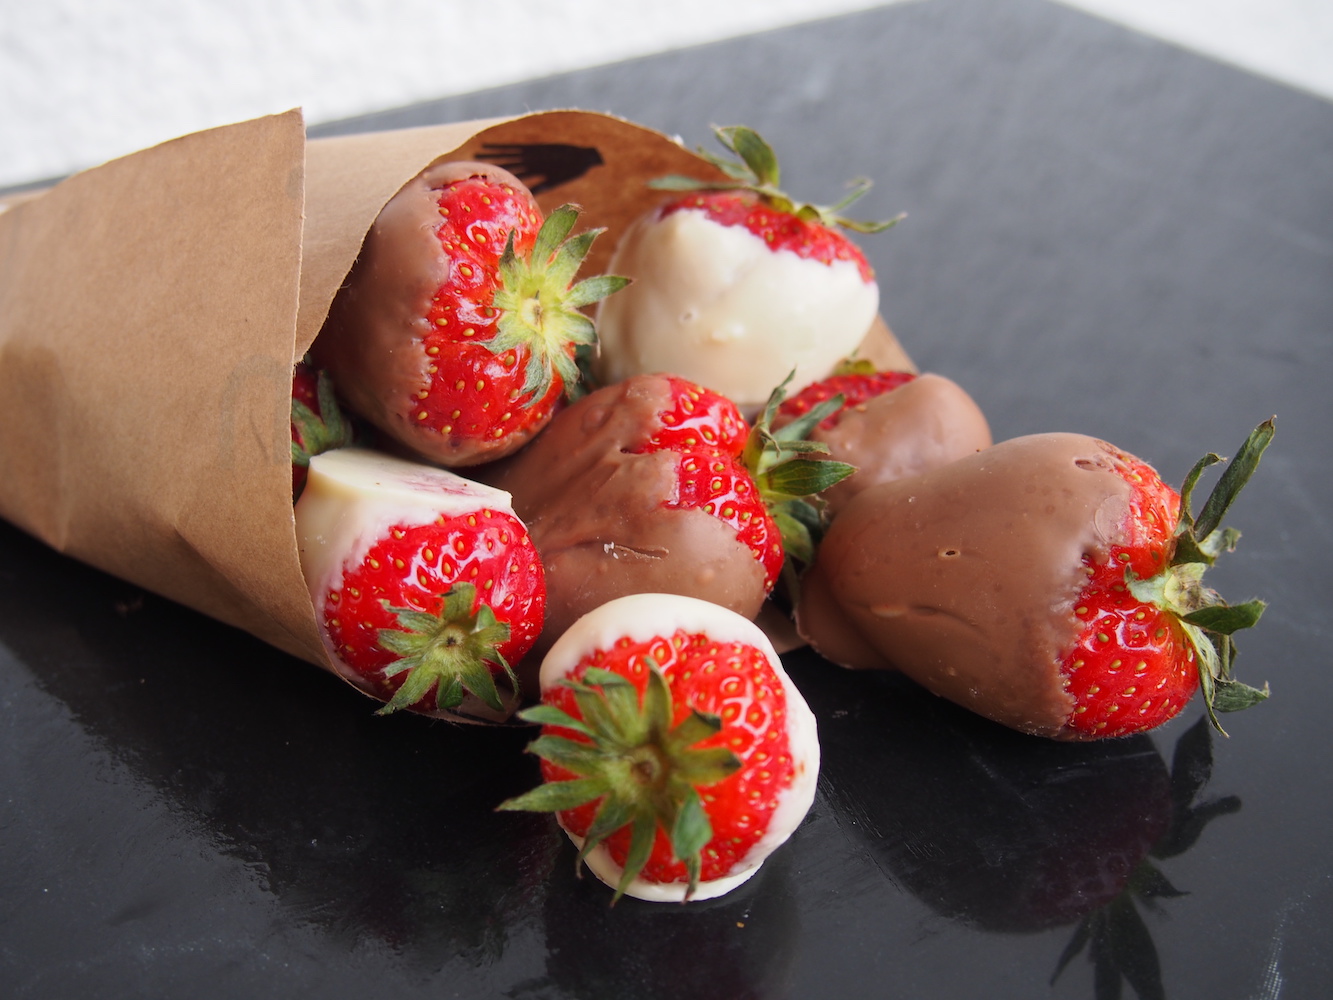 Erdbeeren mit Schokolade - Nudel und Strudel - Comfort Food